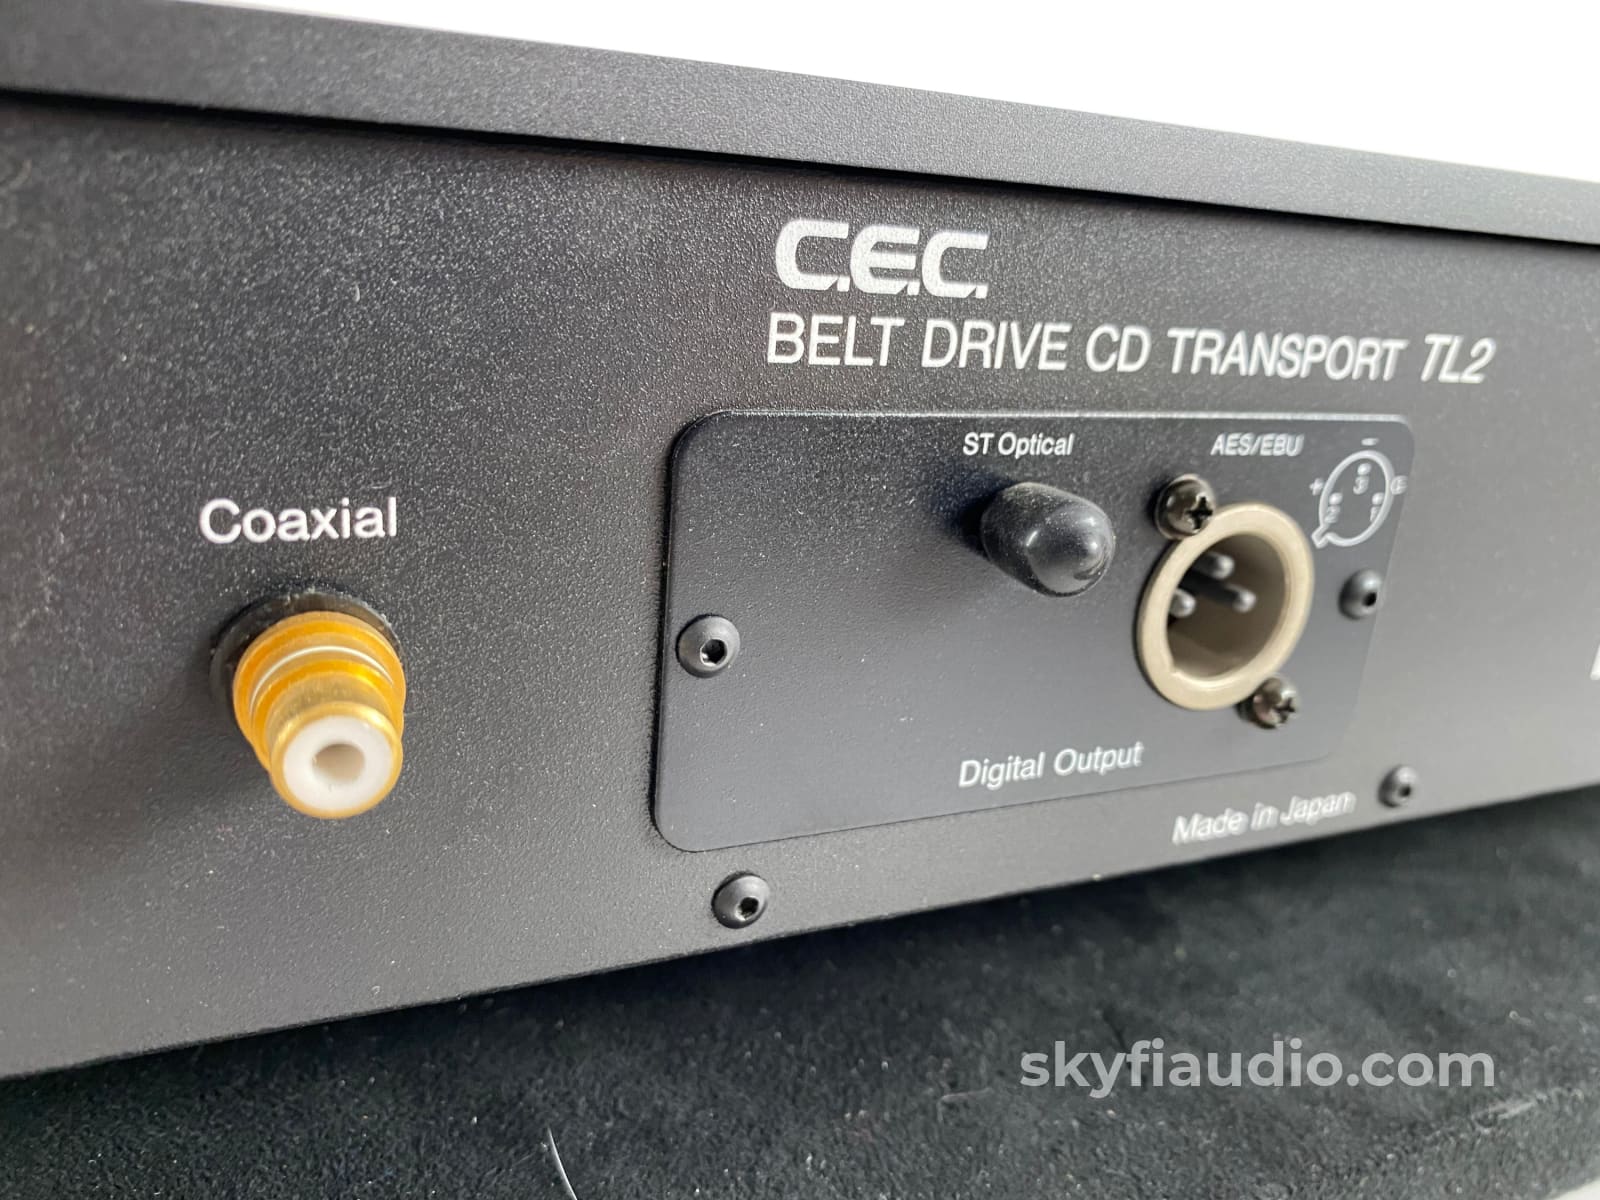 Cec Tl2 Belt Drive Cd Transport - Rare + Digital